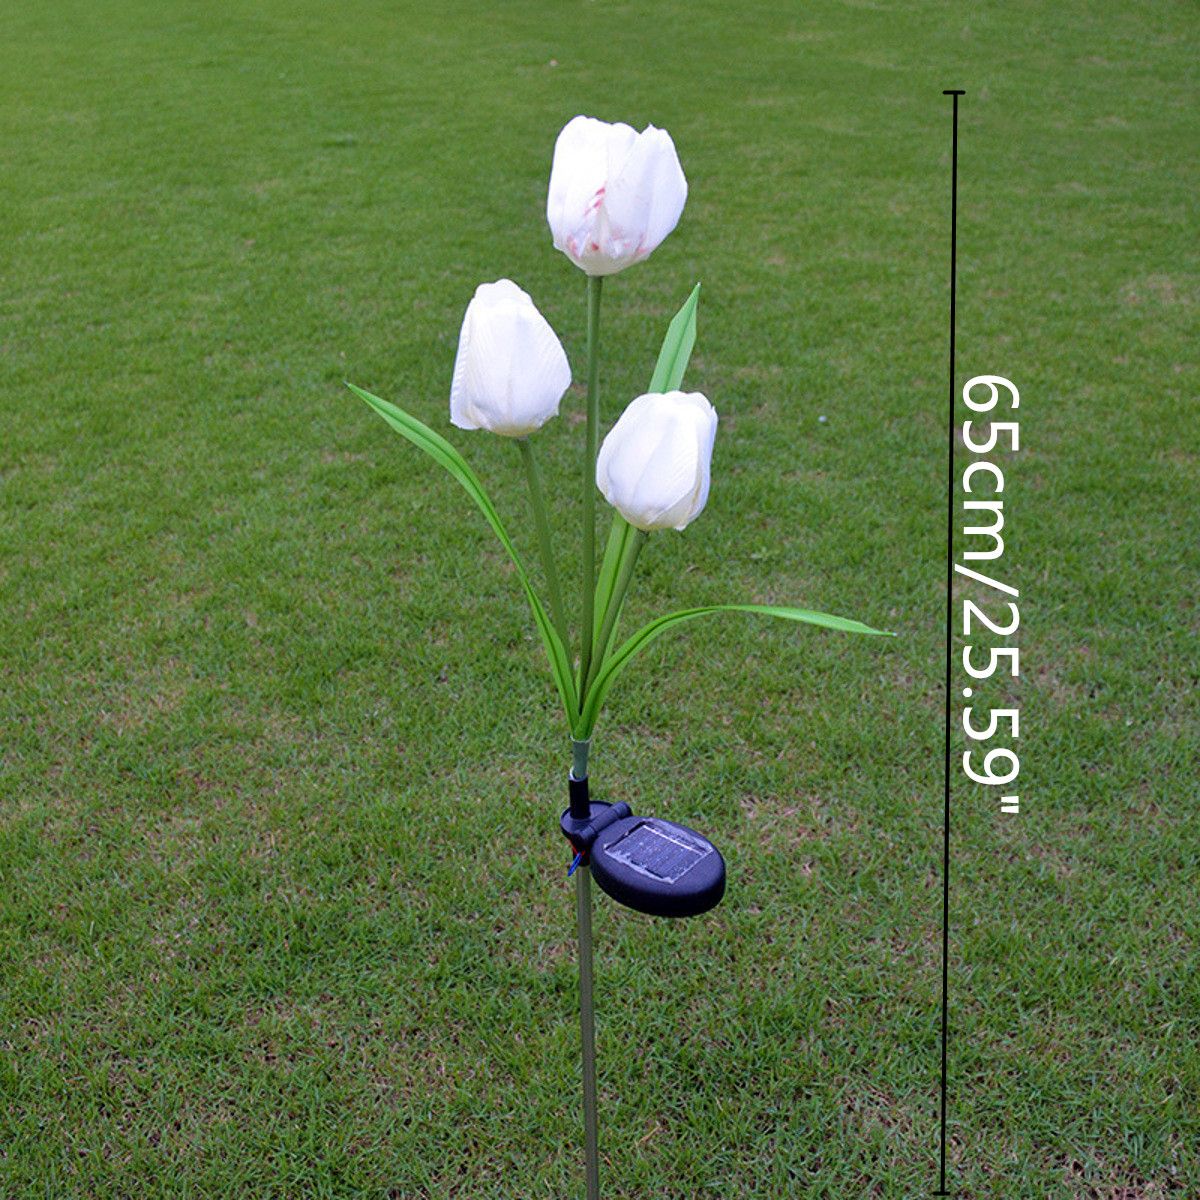 2V-Solar-Power-Mult-Tulip-Flower-Garden-Stake-Landscape-Lamp-Outdoor-Yard-LED-Light-for-Home-1153765